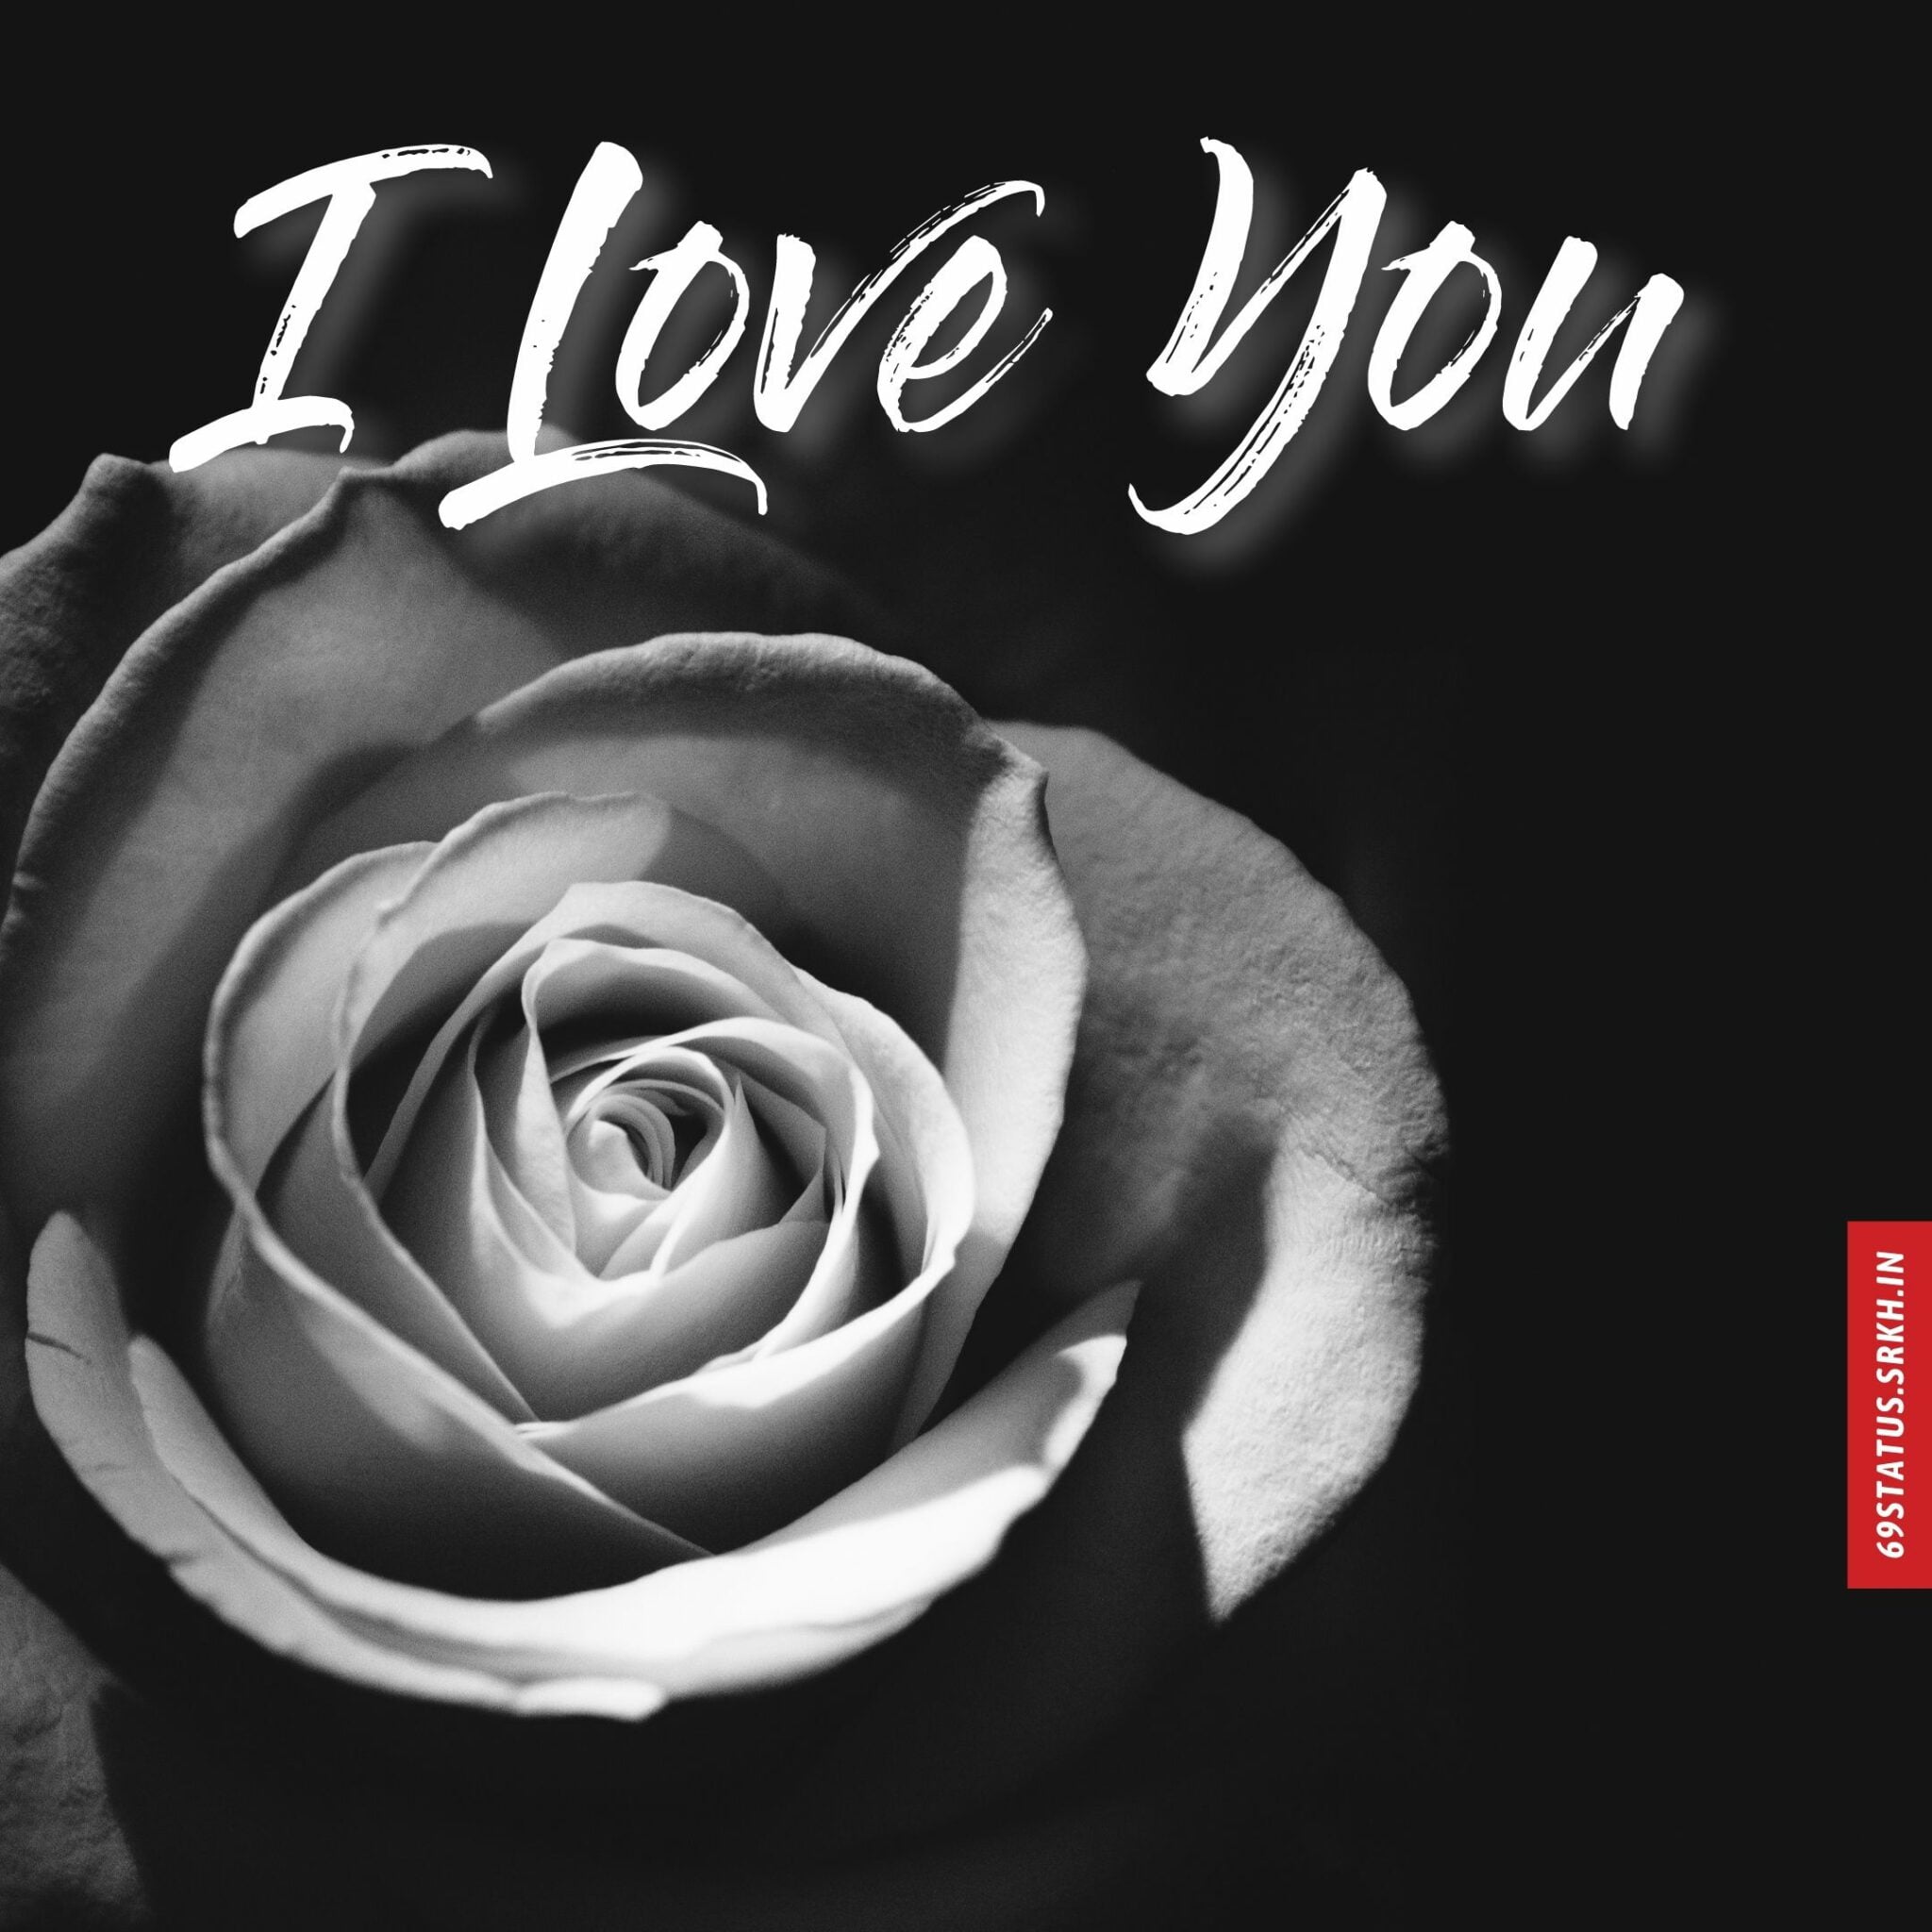 🔥 I Love You s images Download free - Images SRkh